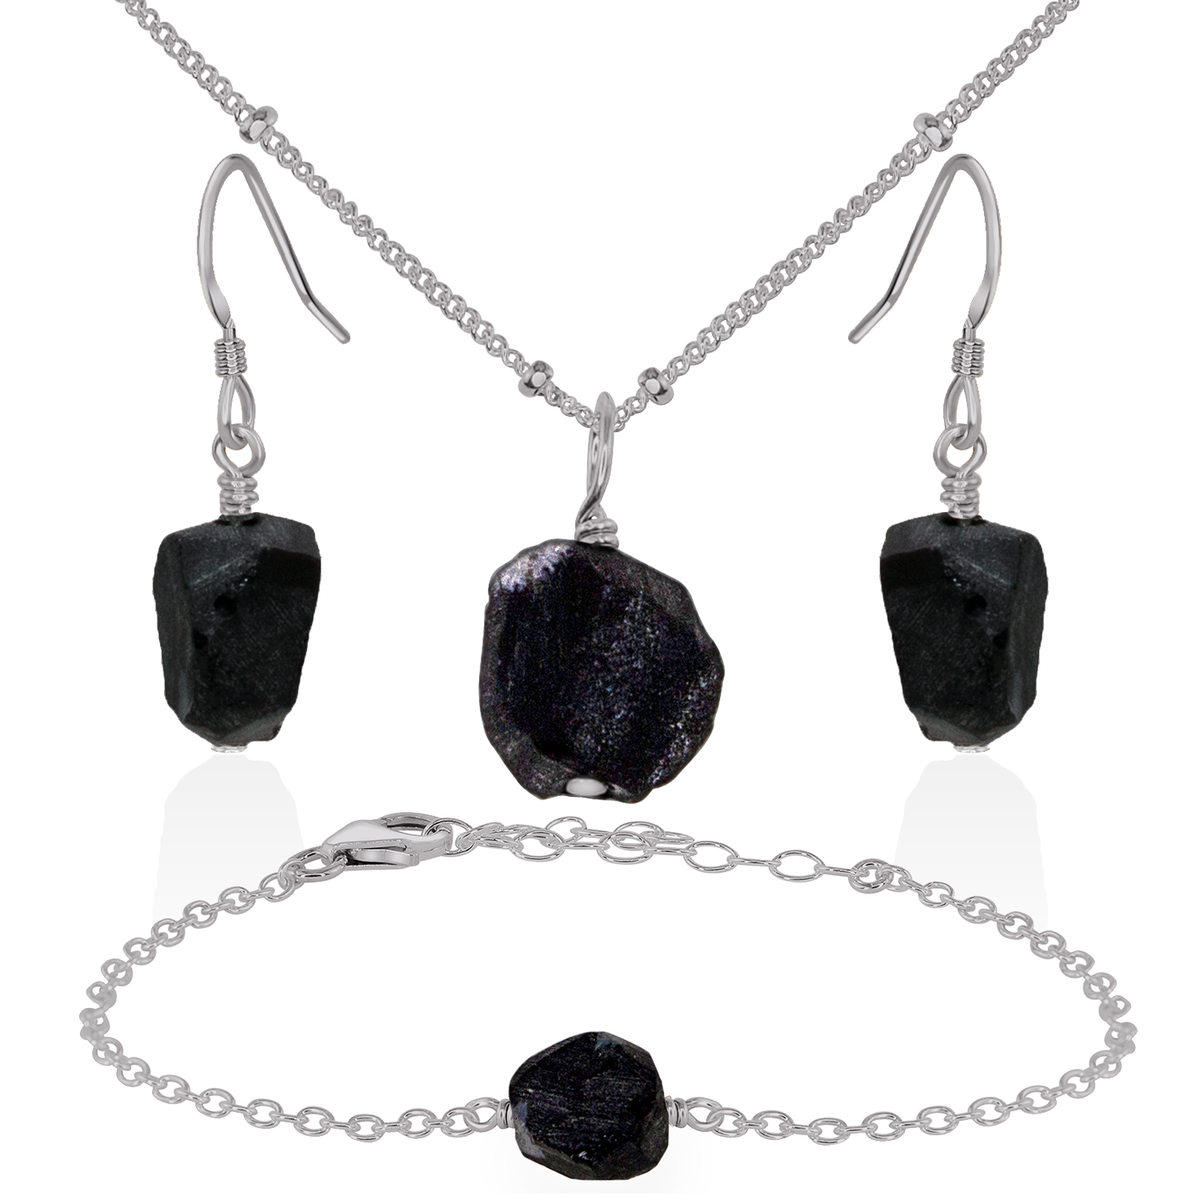 Raw Obsidian Crystal Jewellery Set - Raw Obsidian Crystal Jewellery Set - Stainless Steel / Satellite / Necklace & Earrings & Bracelet - Luna Tide Handmade Crystal Jewellery